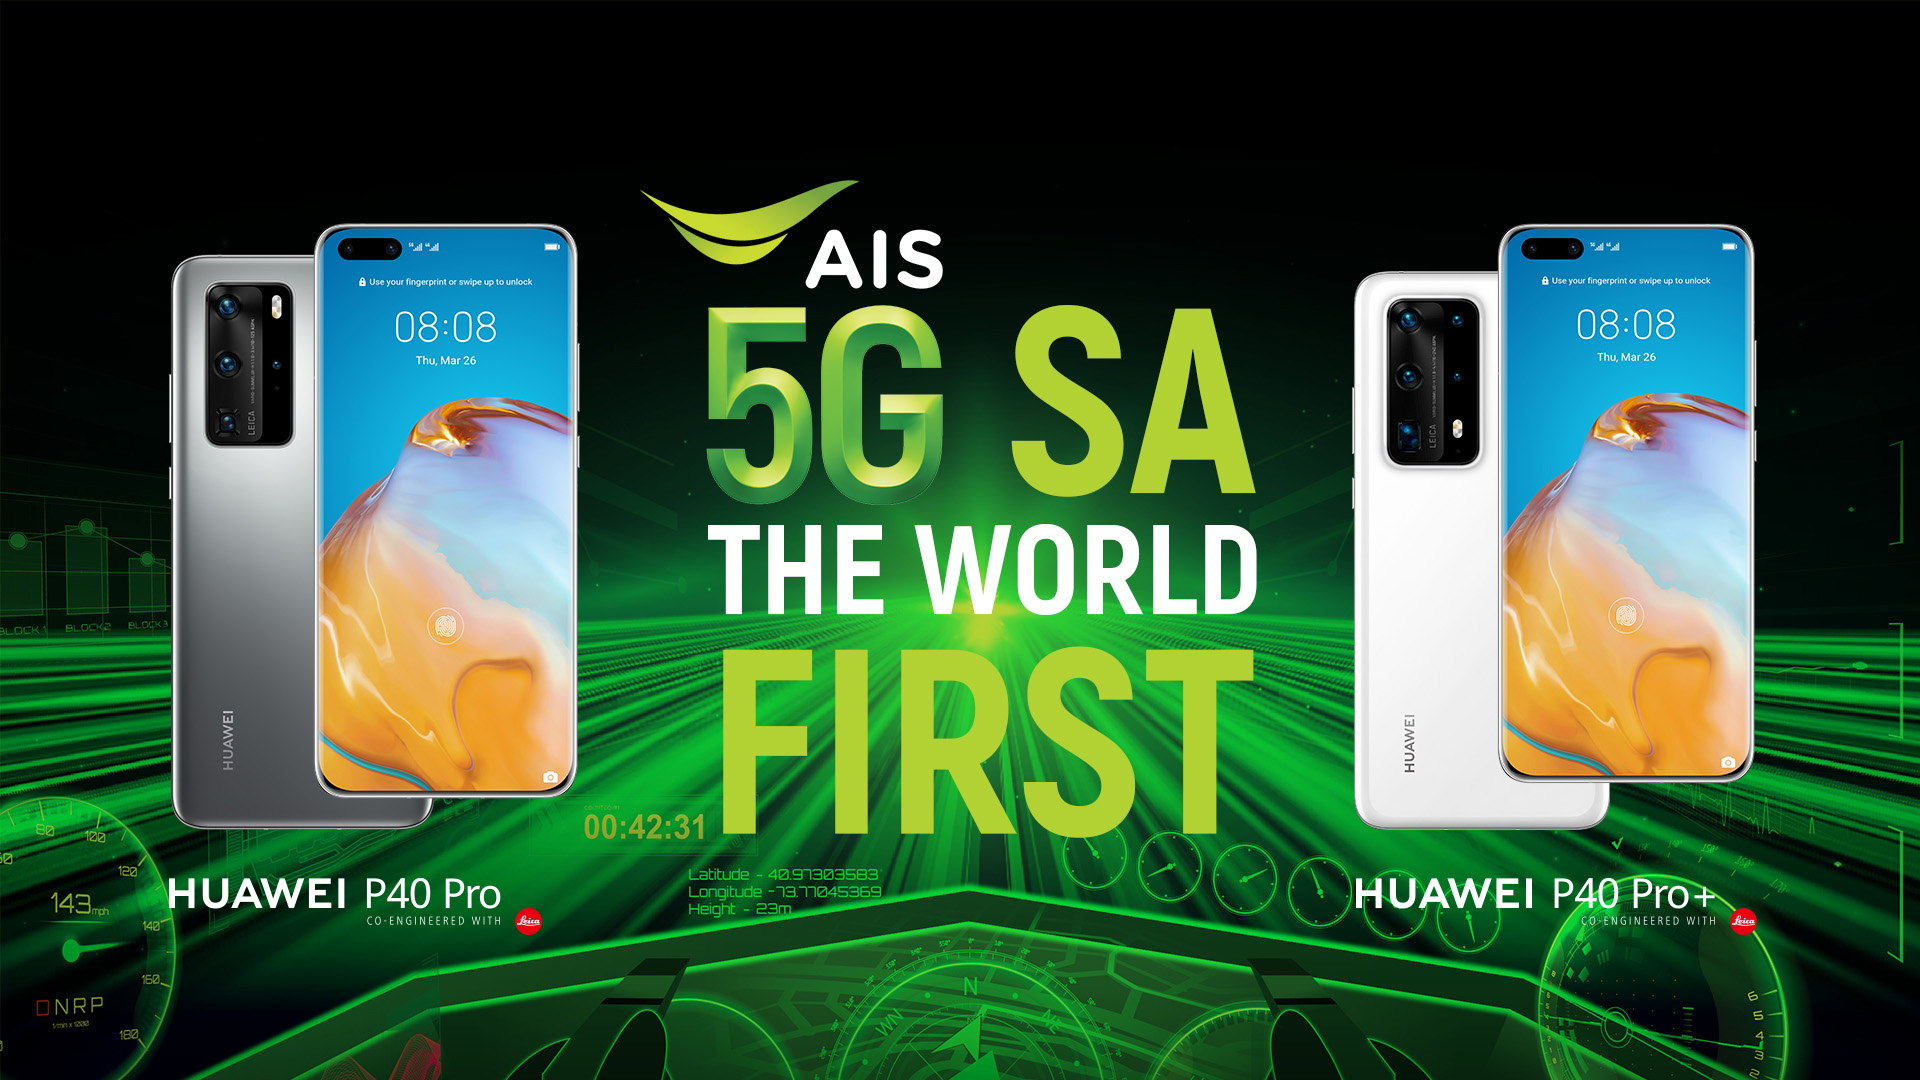 AIS ปักหมุด ไทย ผู้นำนวัตกรรมเครือข่าย 5G SA ผนึก HUAWEI ให้คนไทยสัมผัสสมาร์ทโฟน 5G SA ครั้งแรกในโลก กับ HUAWEI P40 Pro,HUAWEI P40 Pro 